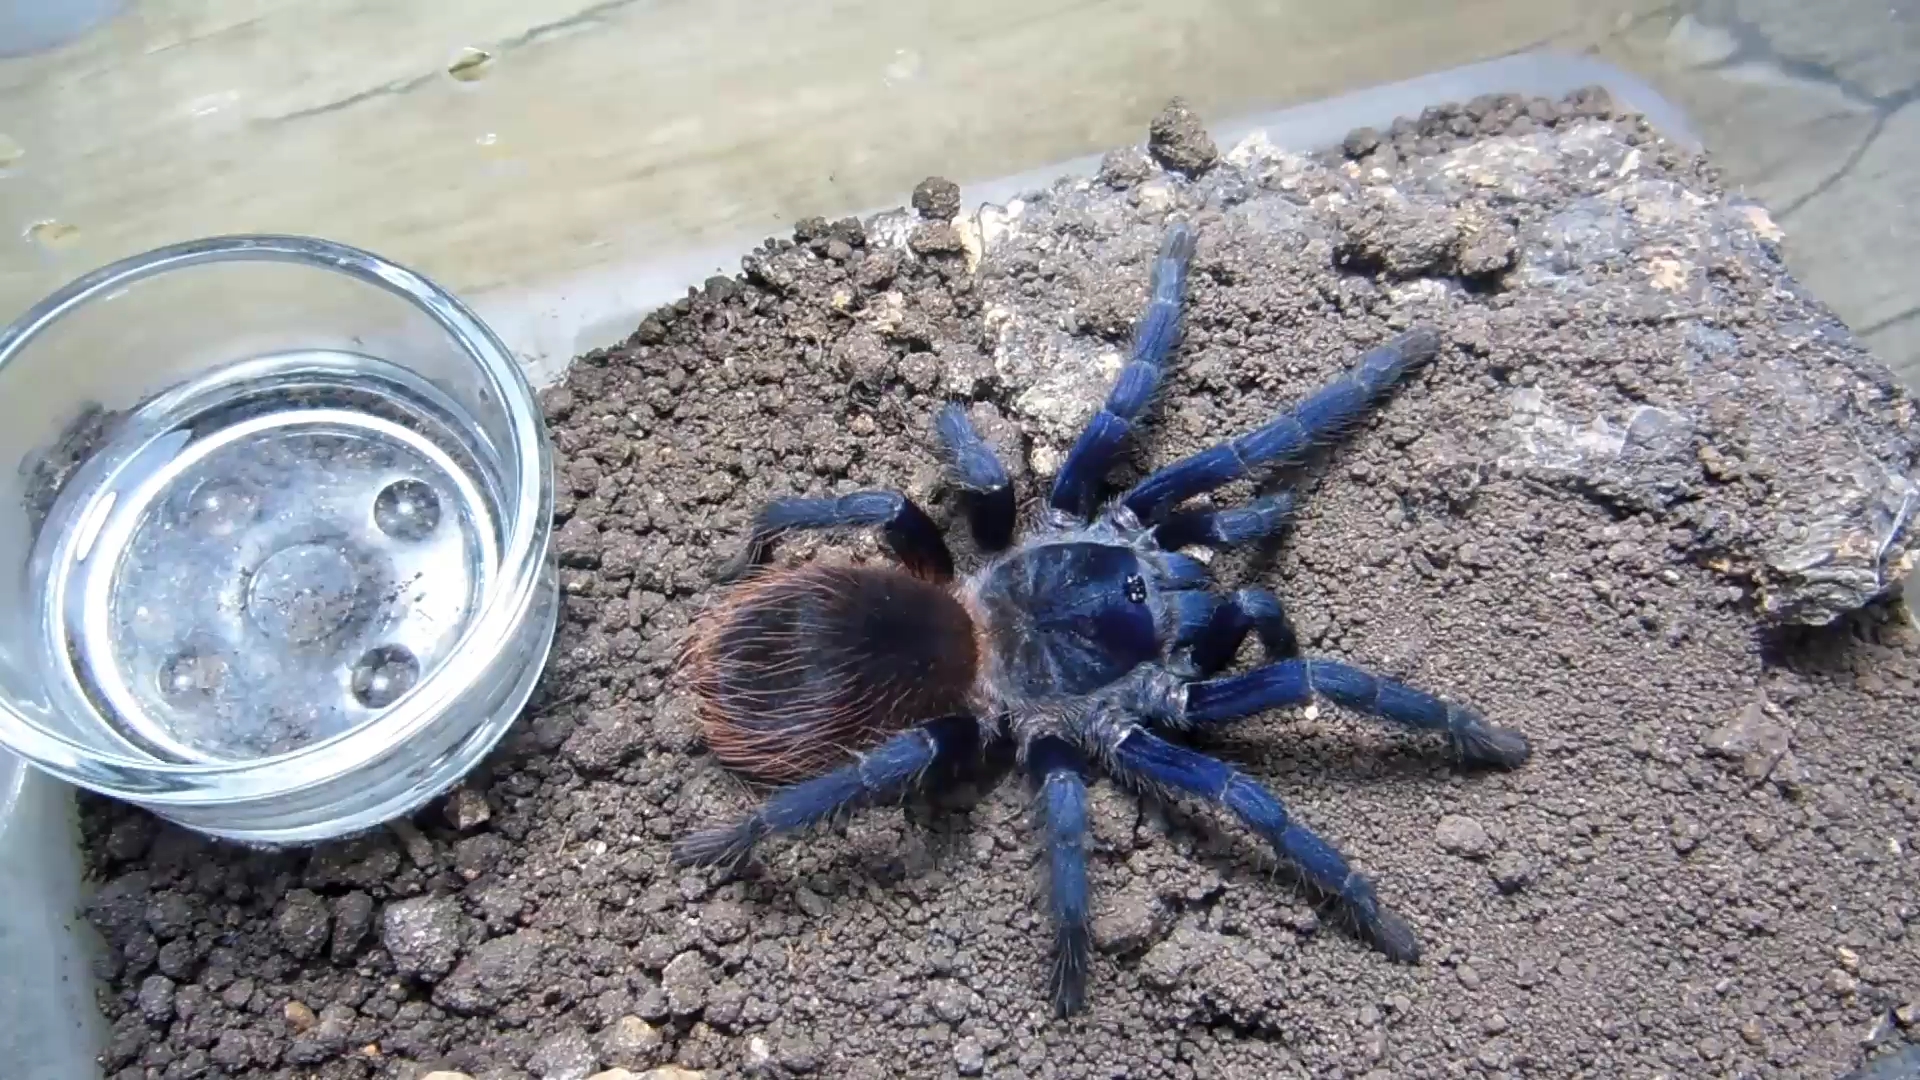 喂食一只通体蓝色的大蜘蛛巴西大蓝捕鸟蛛的喂食